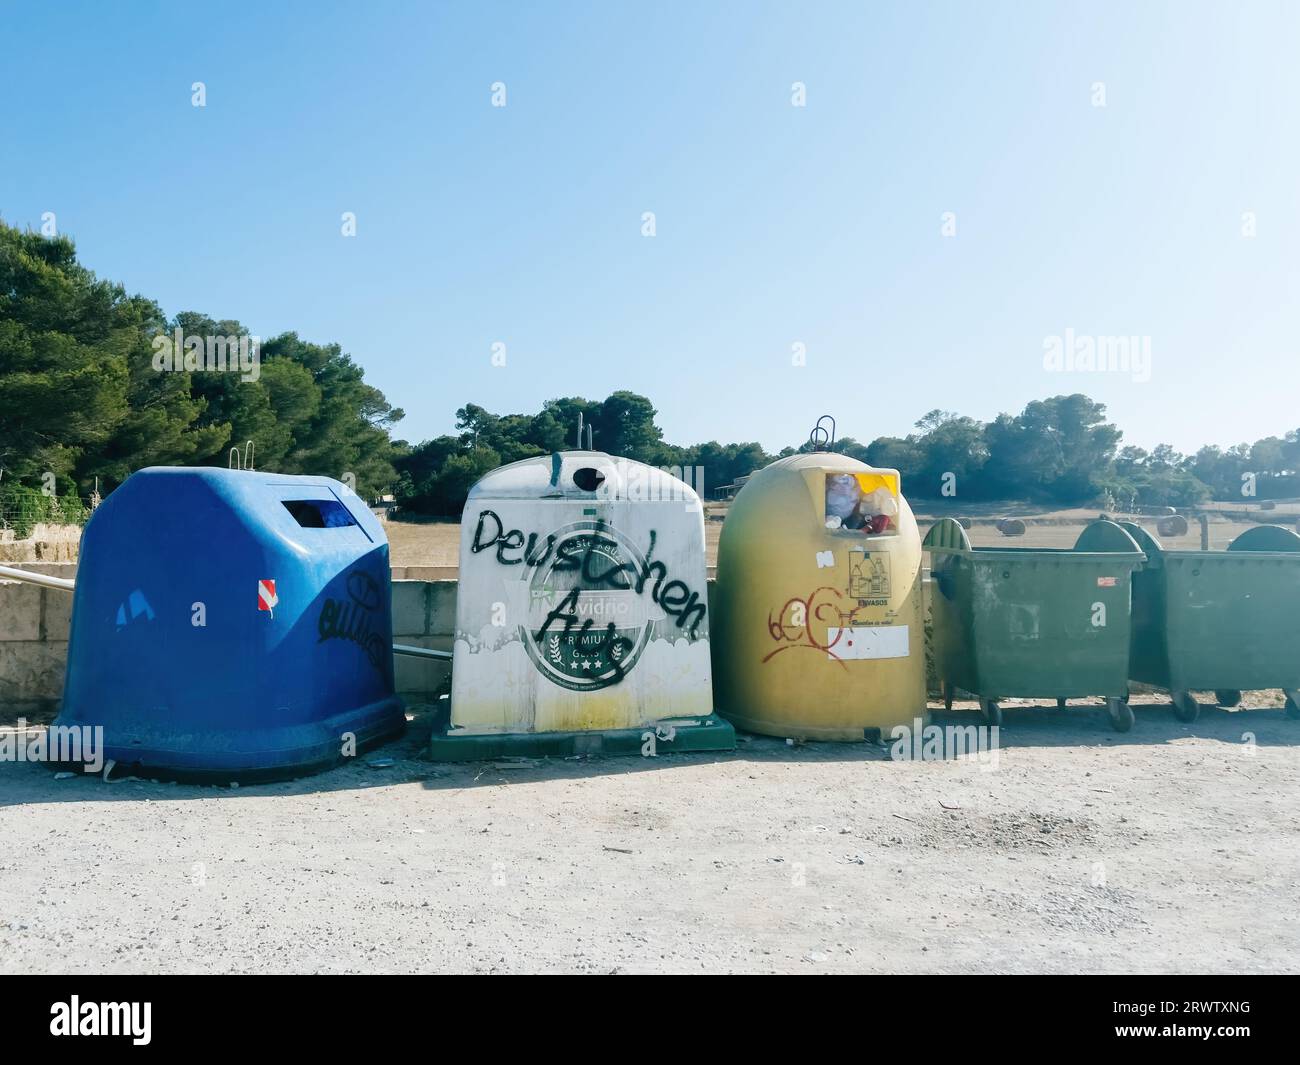 Maiorca, Spagna - 30 giugno 2023: In un parcheggio pubblico di Maiorca, i cestini dei rifiuti visualizzano il messaggio Feutschen Aus tradotto in inglese con la scomparsa dei tedeschi. Foto Stock